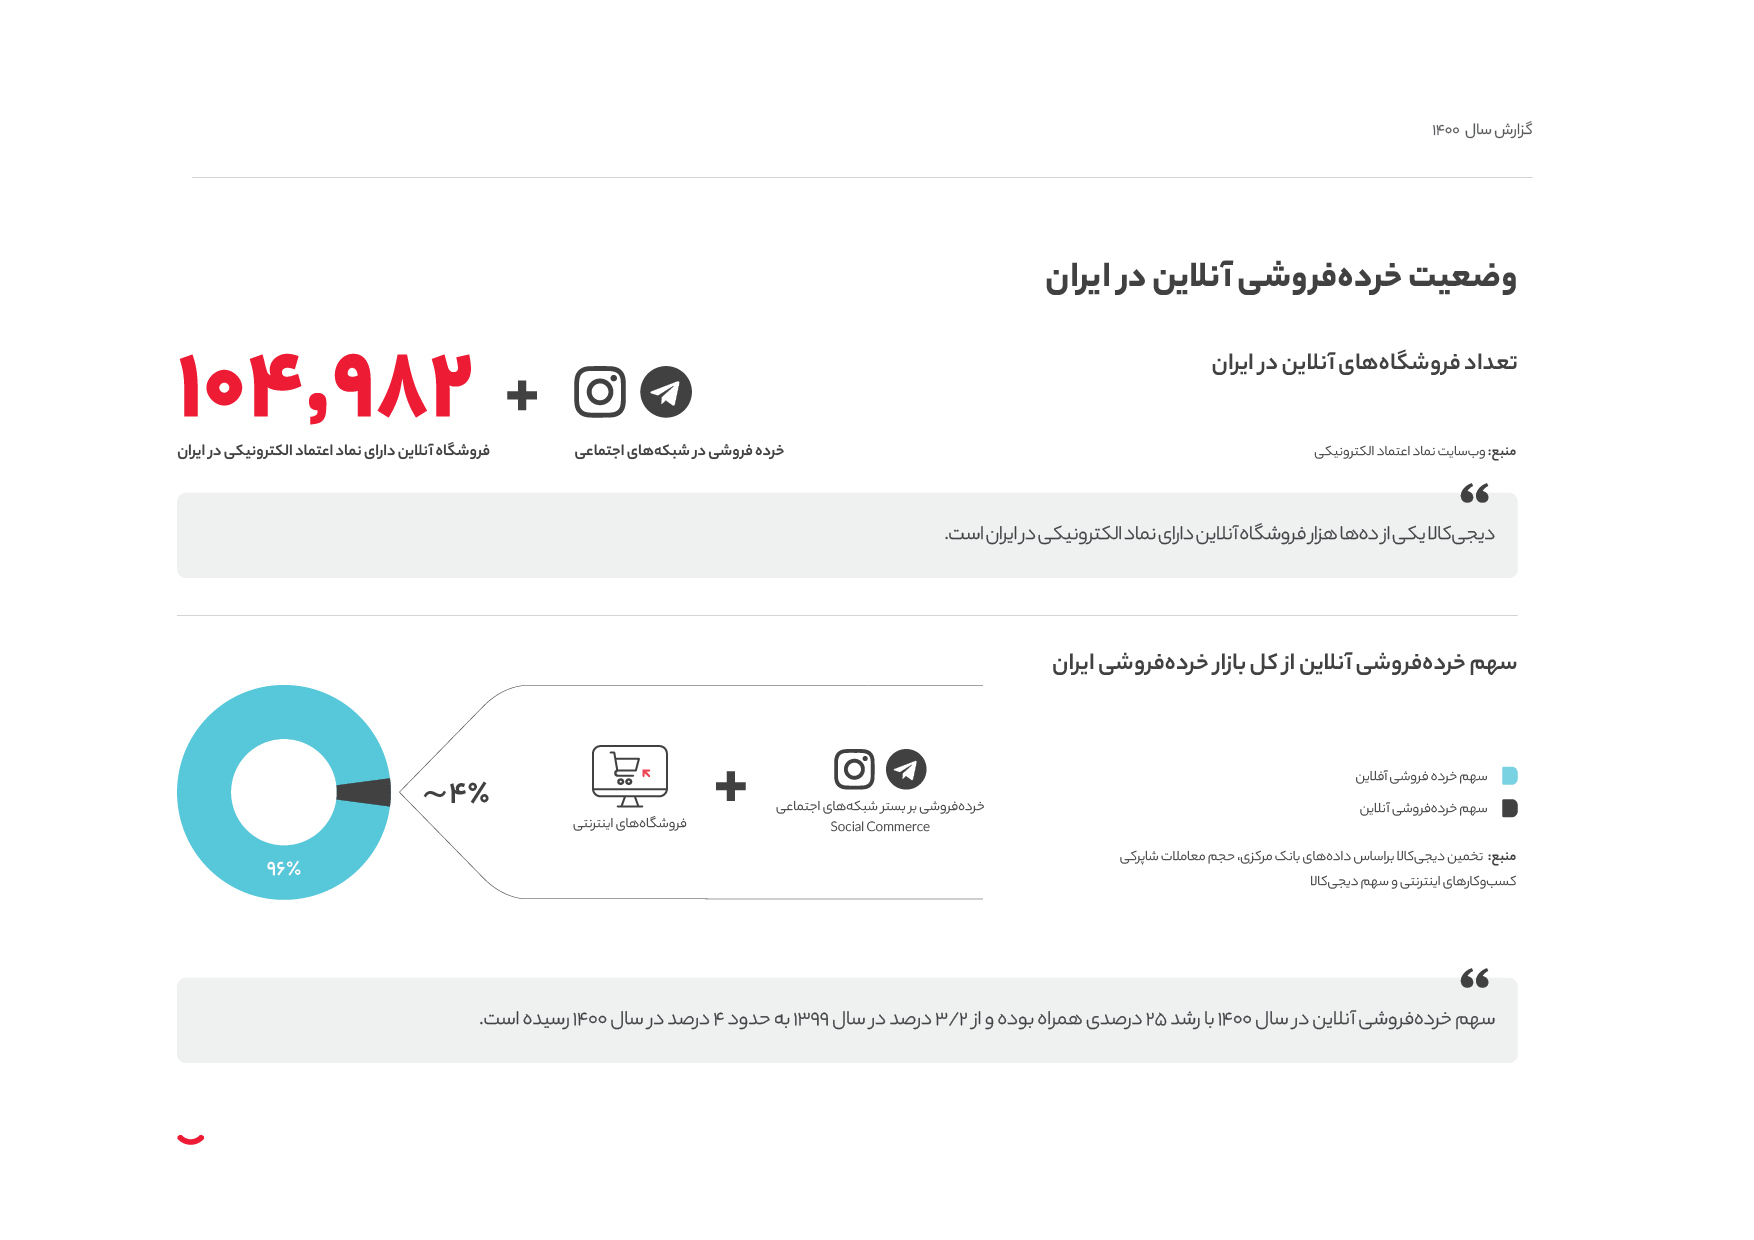 یک برش کوچک؛ خرده فروشی آنلاین، فقط ۴ درصد از خرده فروشی ایران